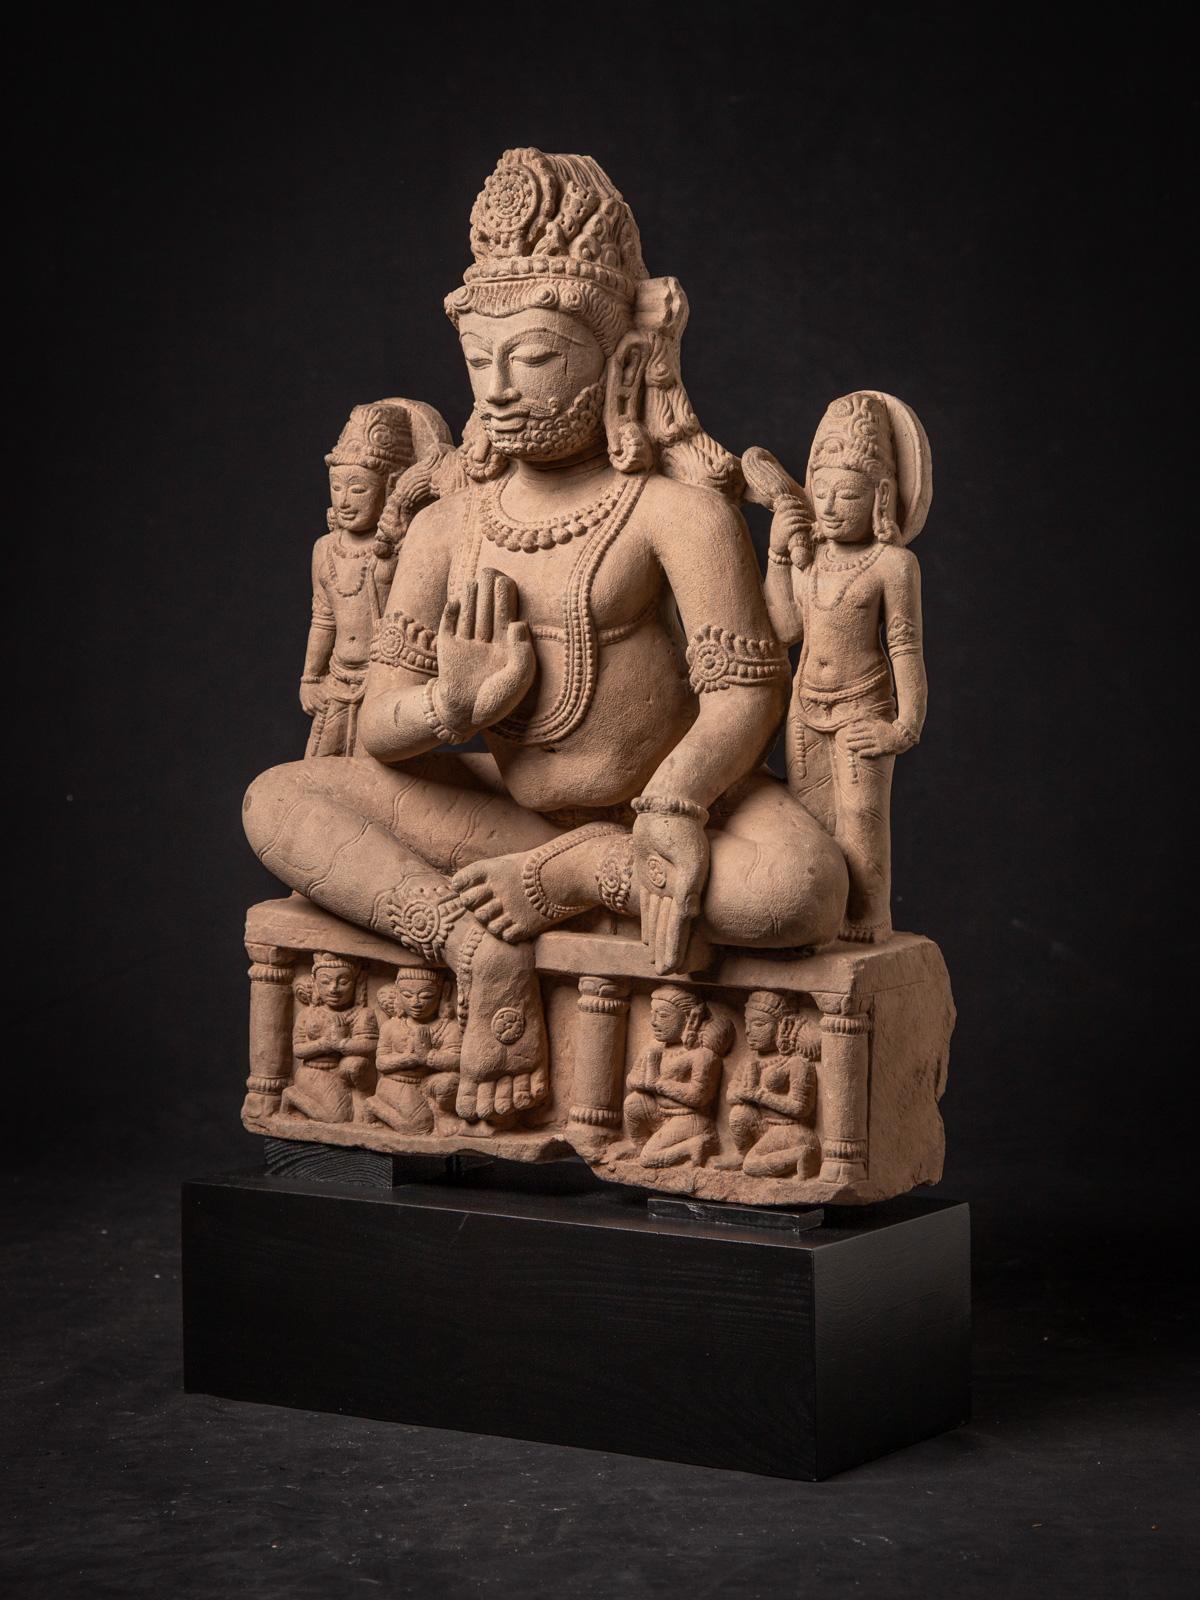 Diese Sandsteinskulptur, die im 19. Jahrhundert aus Madhya Pradesh in Indien stammt, ist ein beeindruckendes Kunstwerk. Sie ist aus Sandstein gemeißelt und hat eine beeindruckende Höhe von 69 cm sowie Abmessungen von 41,5 cm in der Breite und 16,5